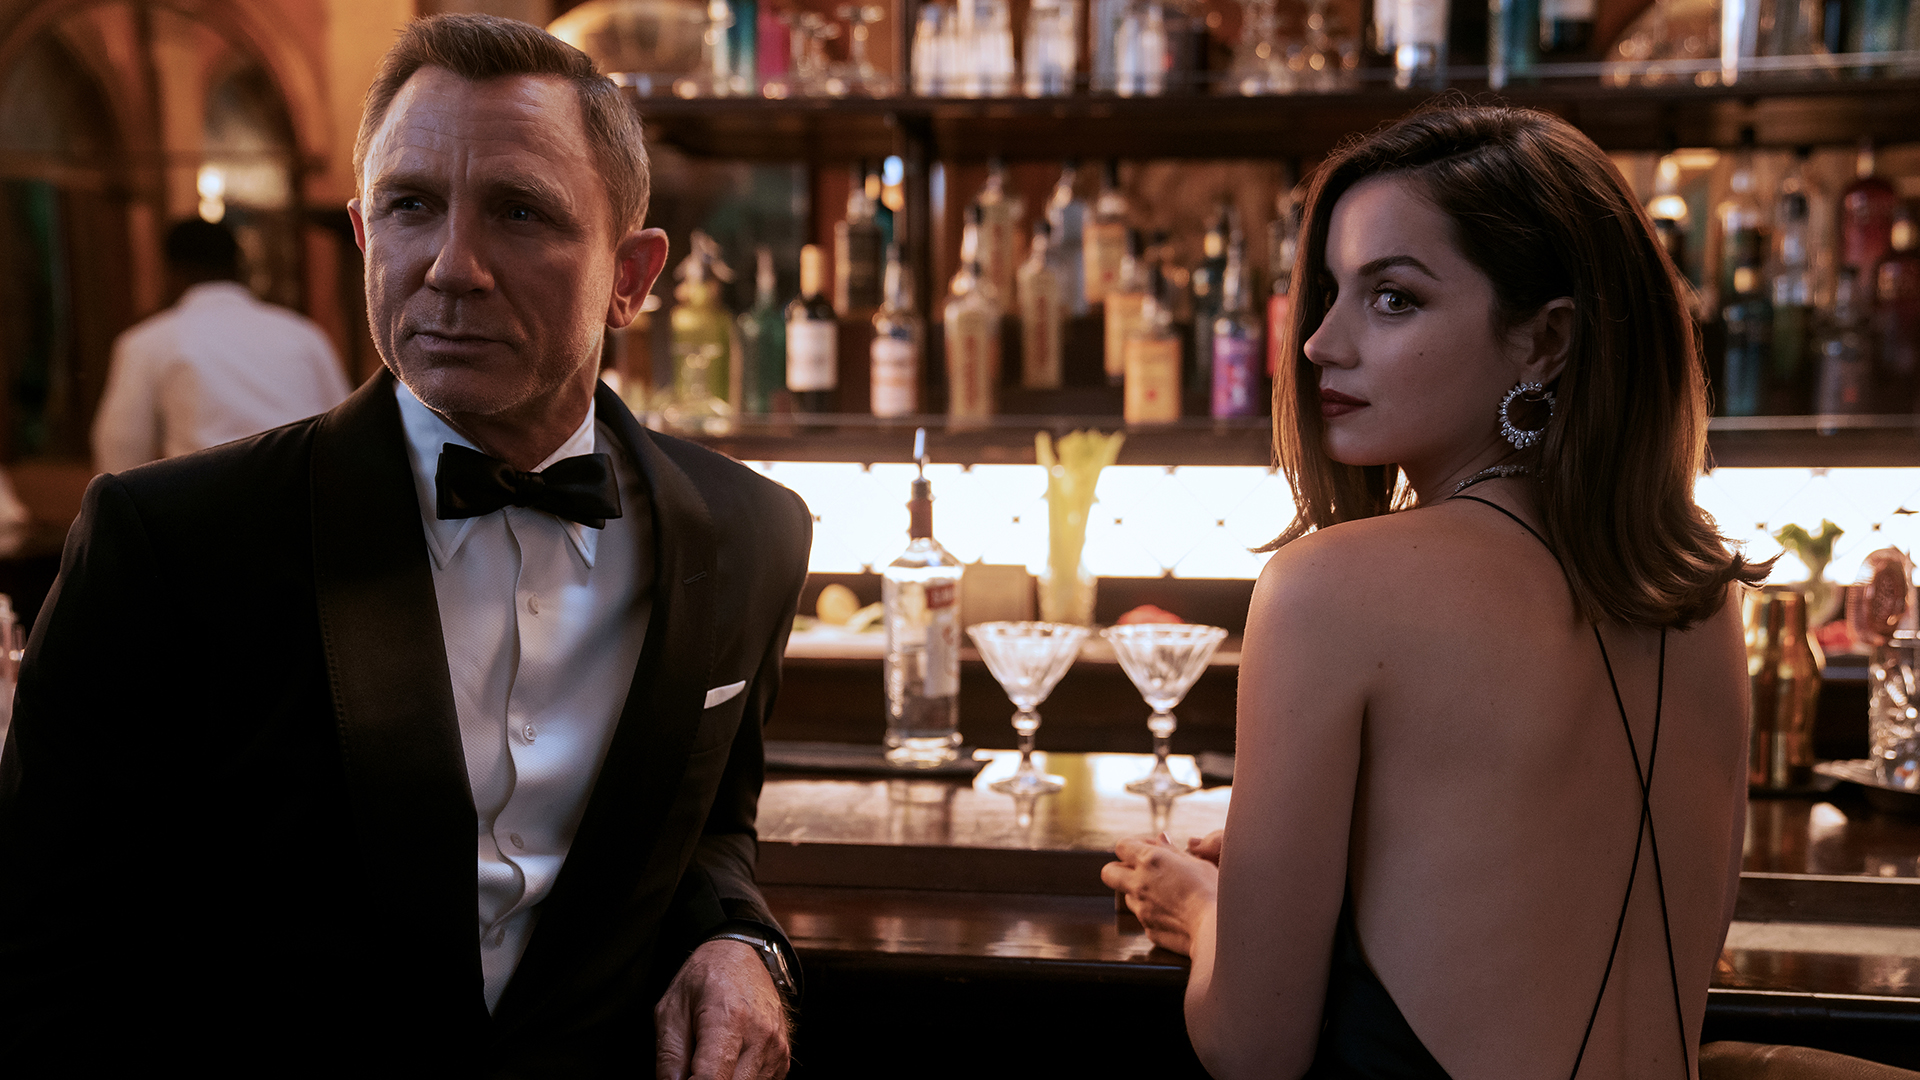 Eine Szene des Films "James Bond 007 - Keine Zeit zu sterben" | Nicola Dove/Universal Pictures/dpa